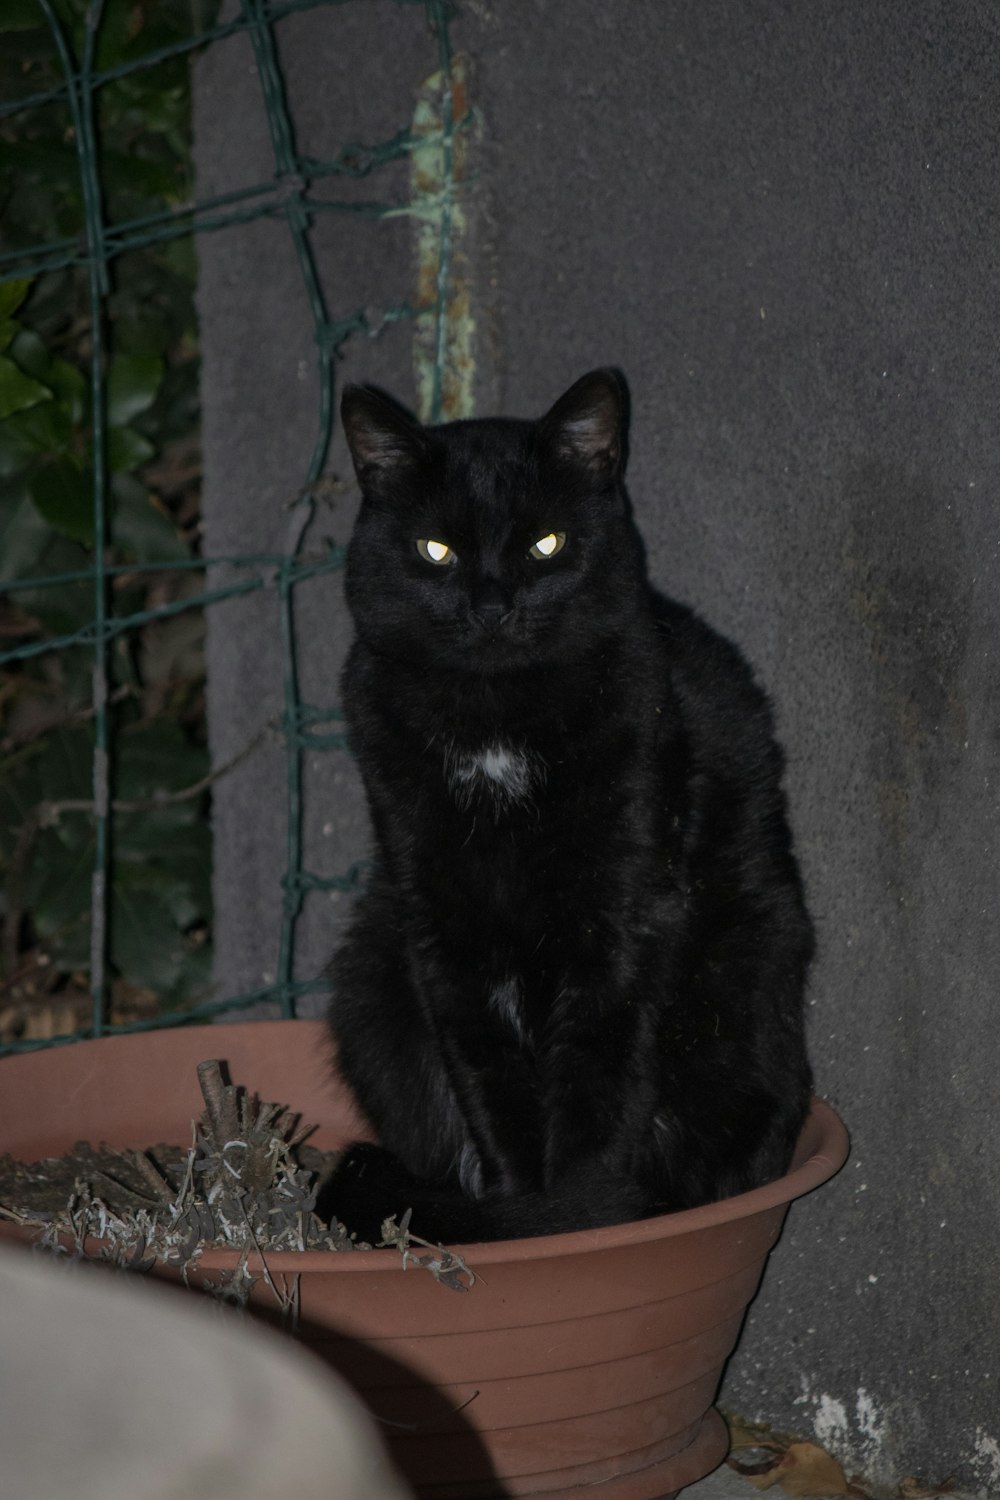 a black cat sitting in a flower pot